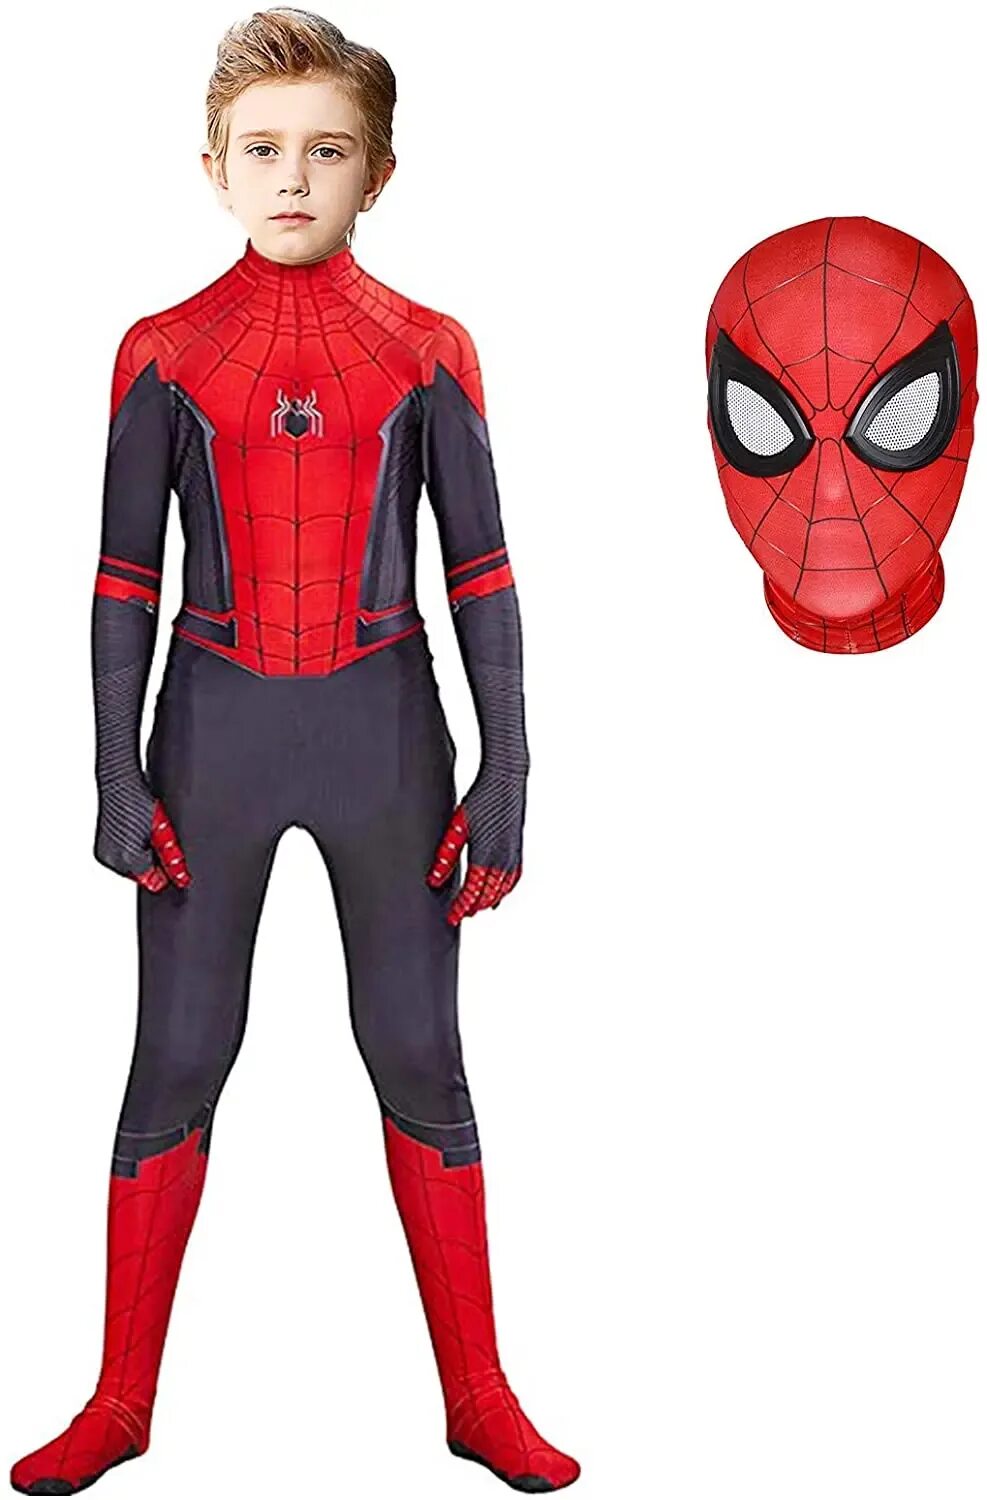 Человек паук для детей 3 лет. Спайдермен костюм спандекс. Superhero Spider man костюм. Костюм человека-паука для мальчика 9-10 лет. New Kid костюм Спайдер Мэн.